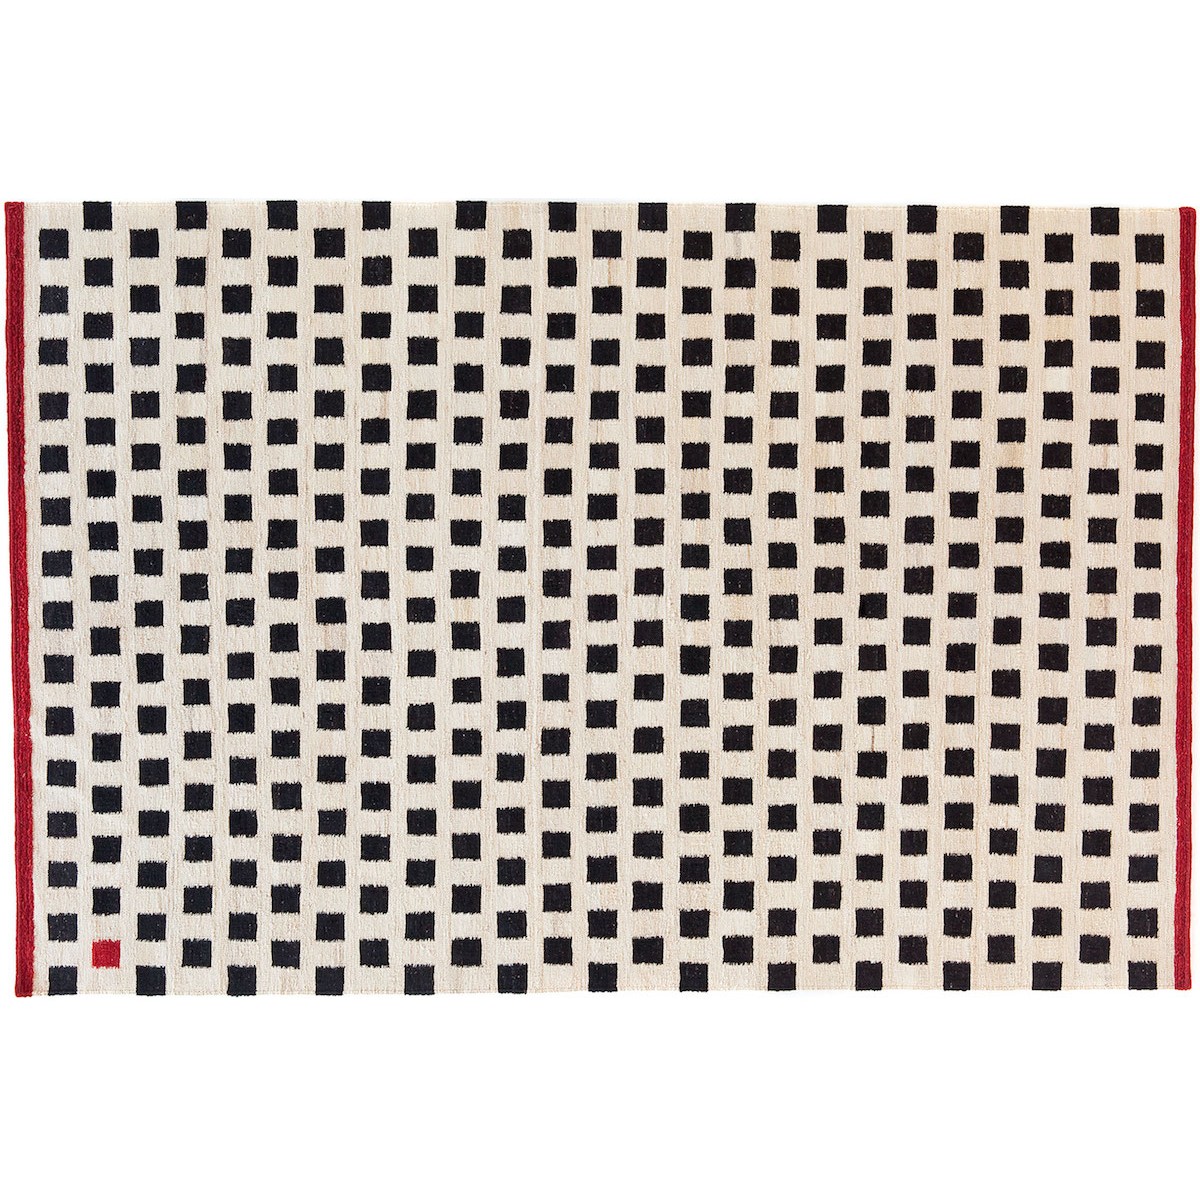 170x240cm - Melange Pattern 3 rug